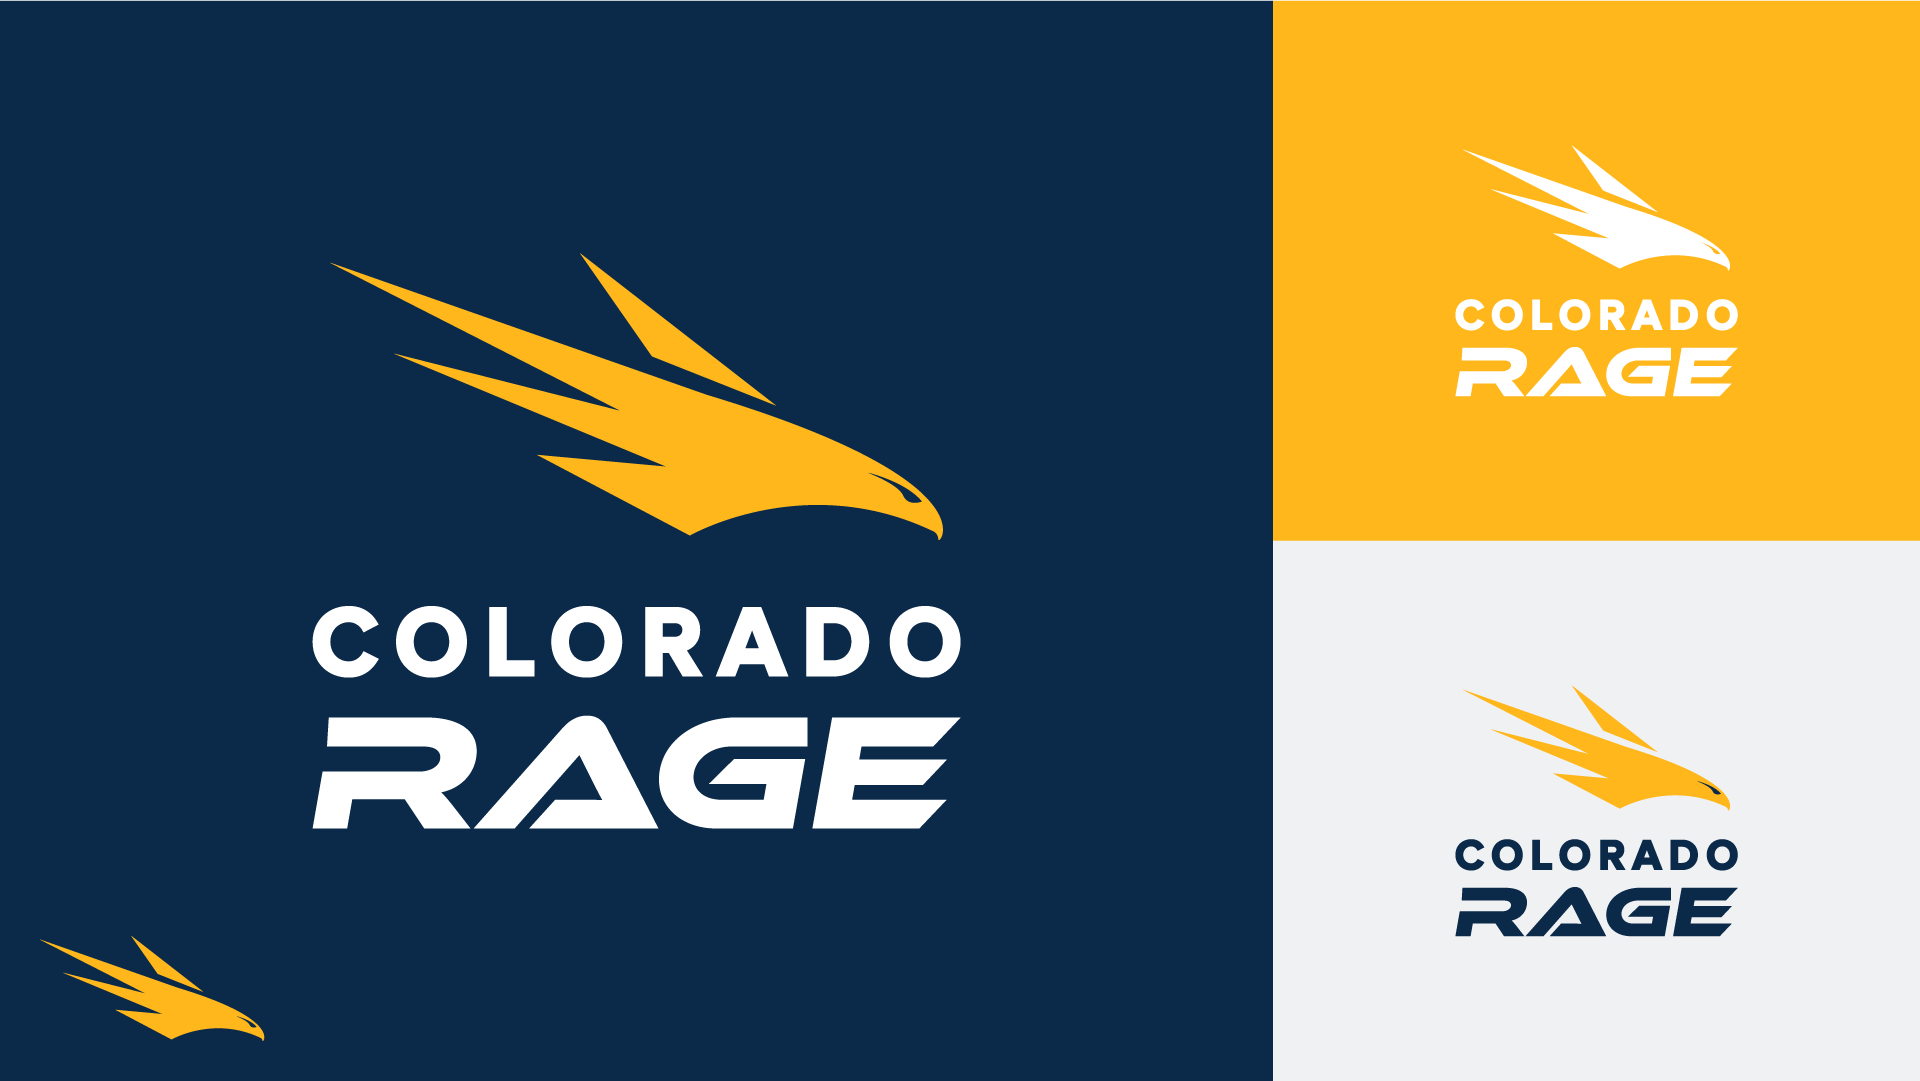 Colorado Rage_1.png